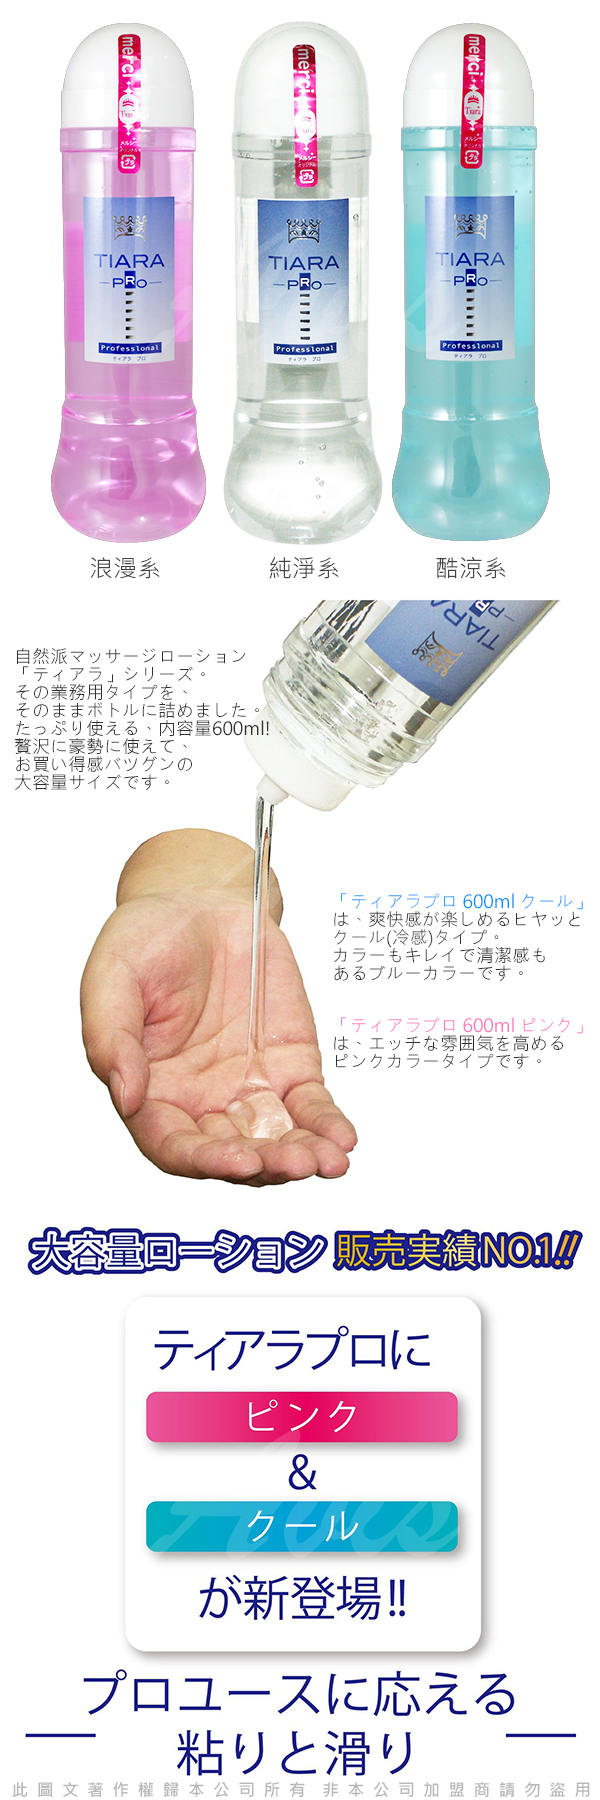 日本NPG Tiara Pro 自然派 水溶性潤滑液 600ml 浪漫系 情趣氣氛提升